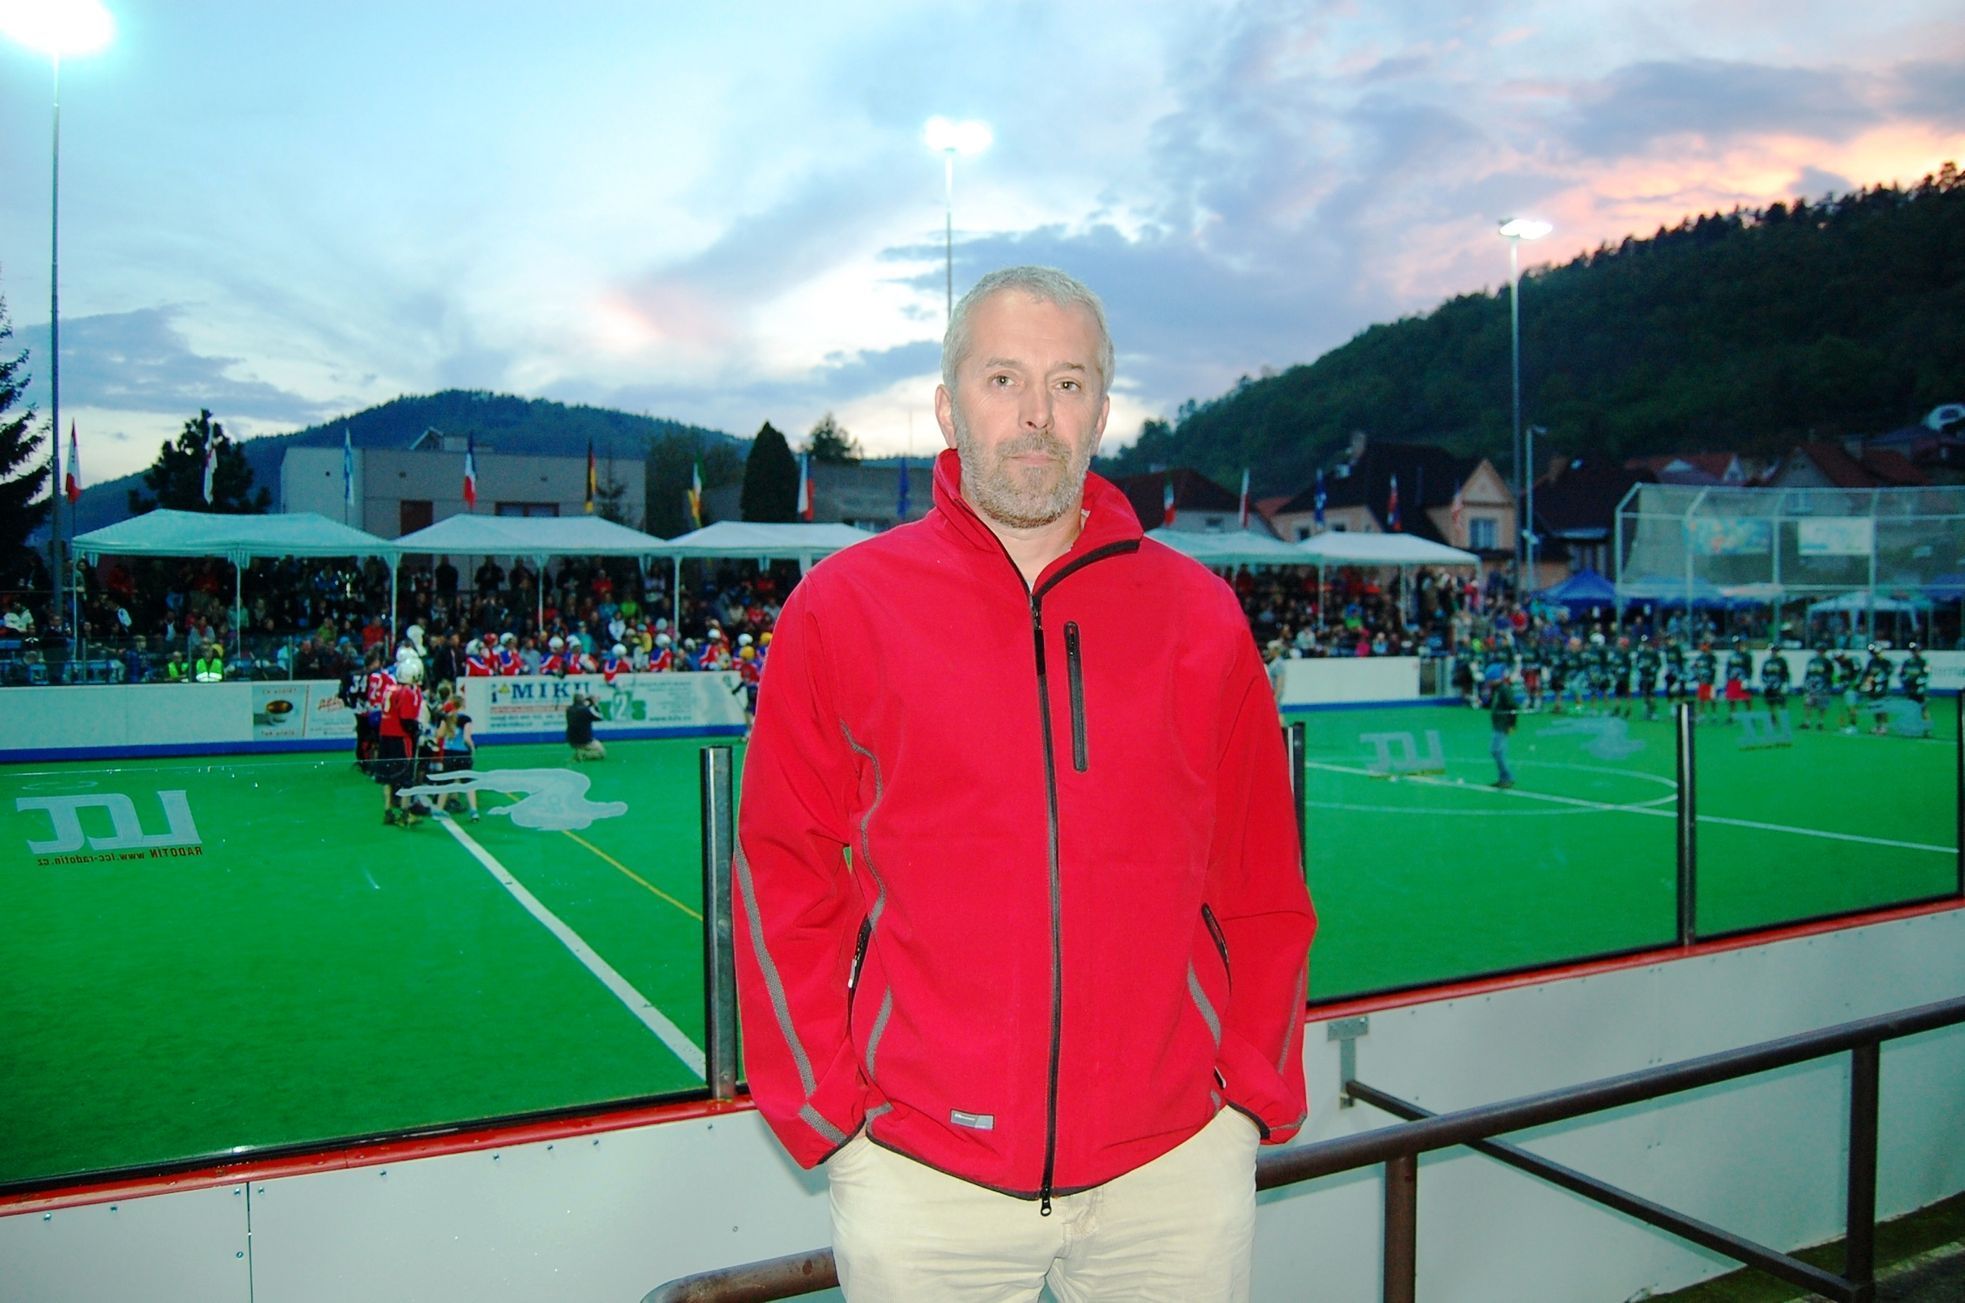 Memoriál Aleše Hřebeského v Radotíně 2014 (box-lacrosse): Jan Barák